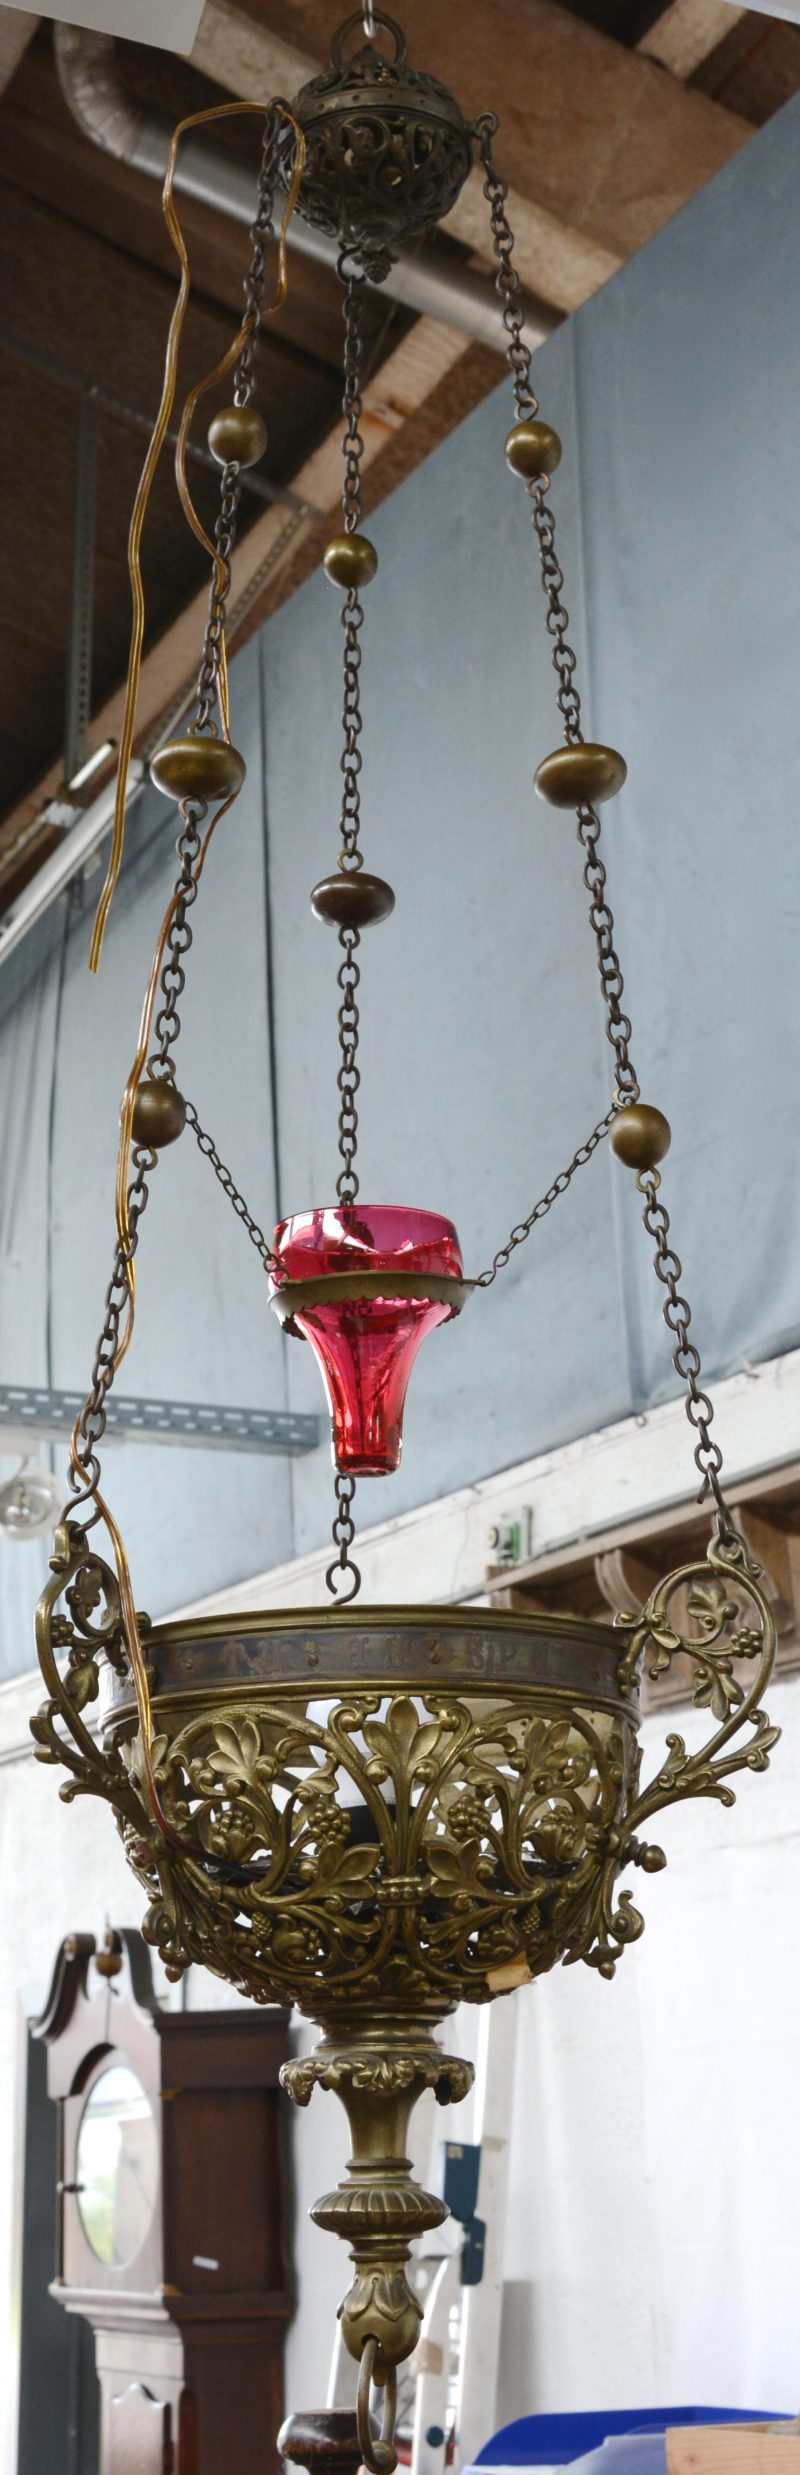 Een bronzen godslamp met opengewerkte bladermotieven en een rood glazen kapje.